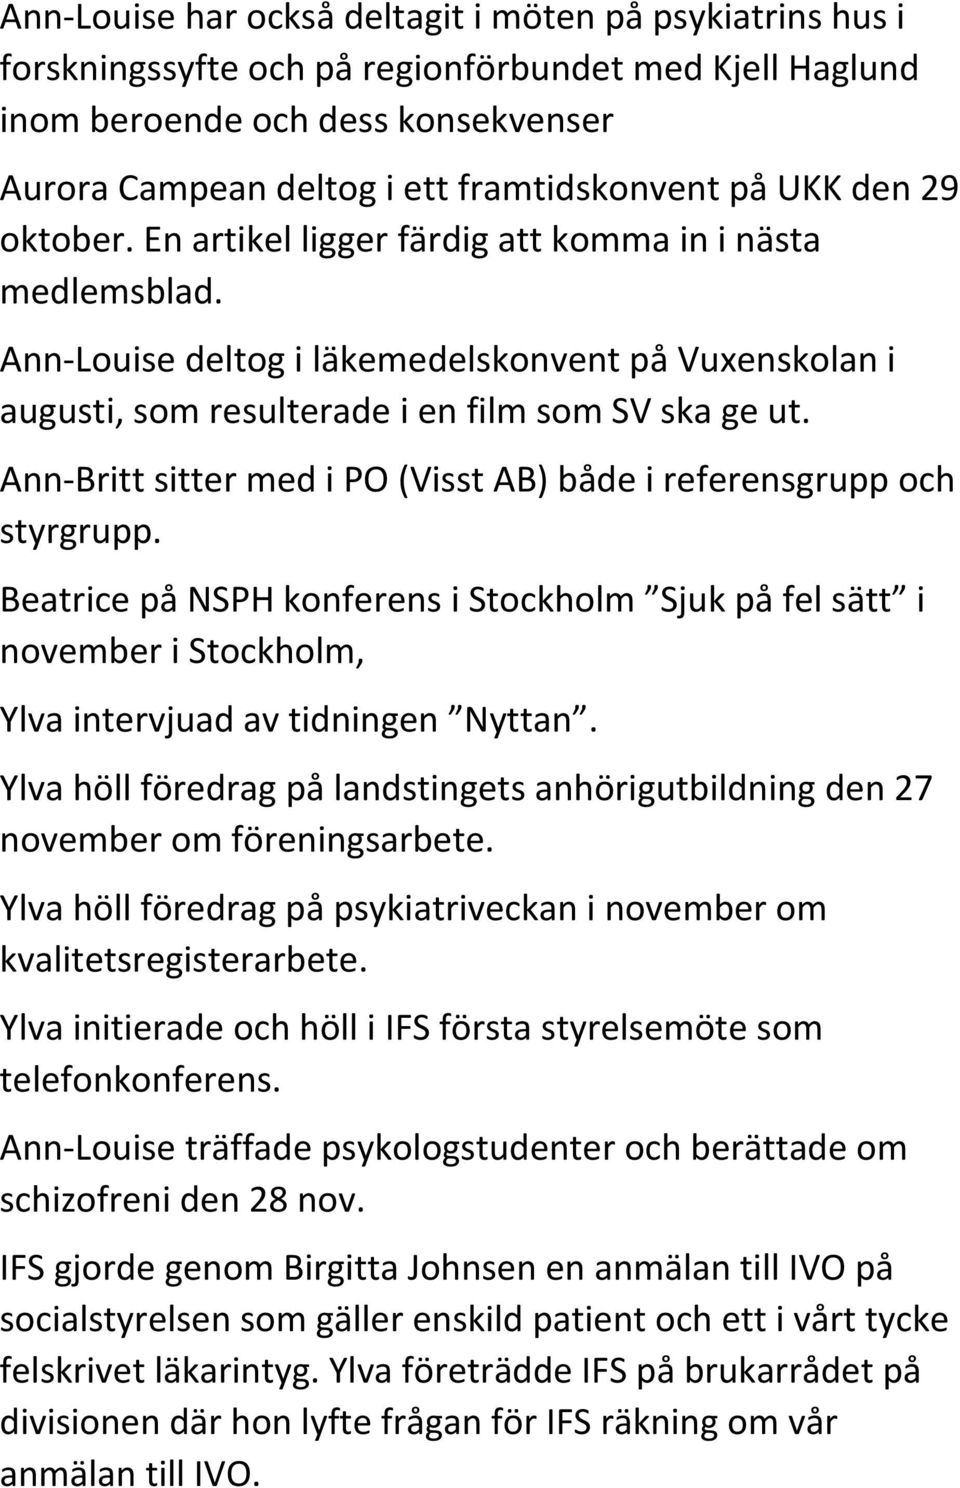 Ann Britt sitter med i PO (Visst AB) både i referensgrupp och styrgrupp. Beatrice på NSPH konferens i Stockholm Sjuk på fel sätt i november i Stockholm, Ylva intervjuad av tidningen Nyttan.